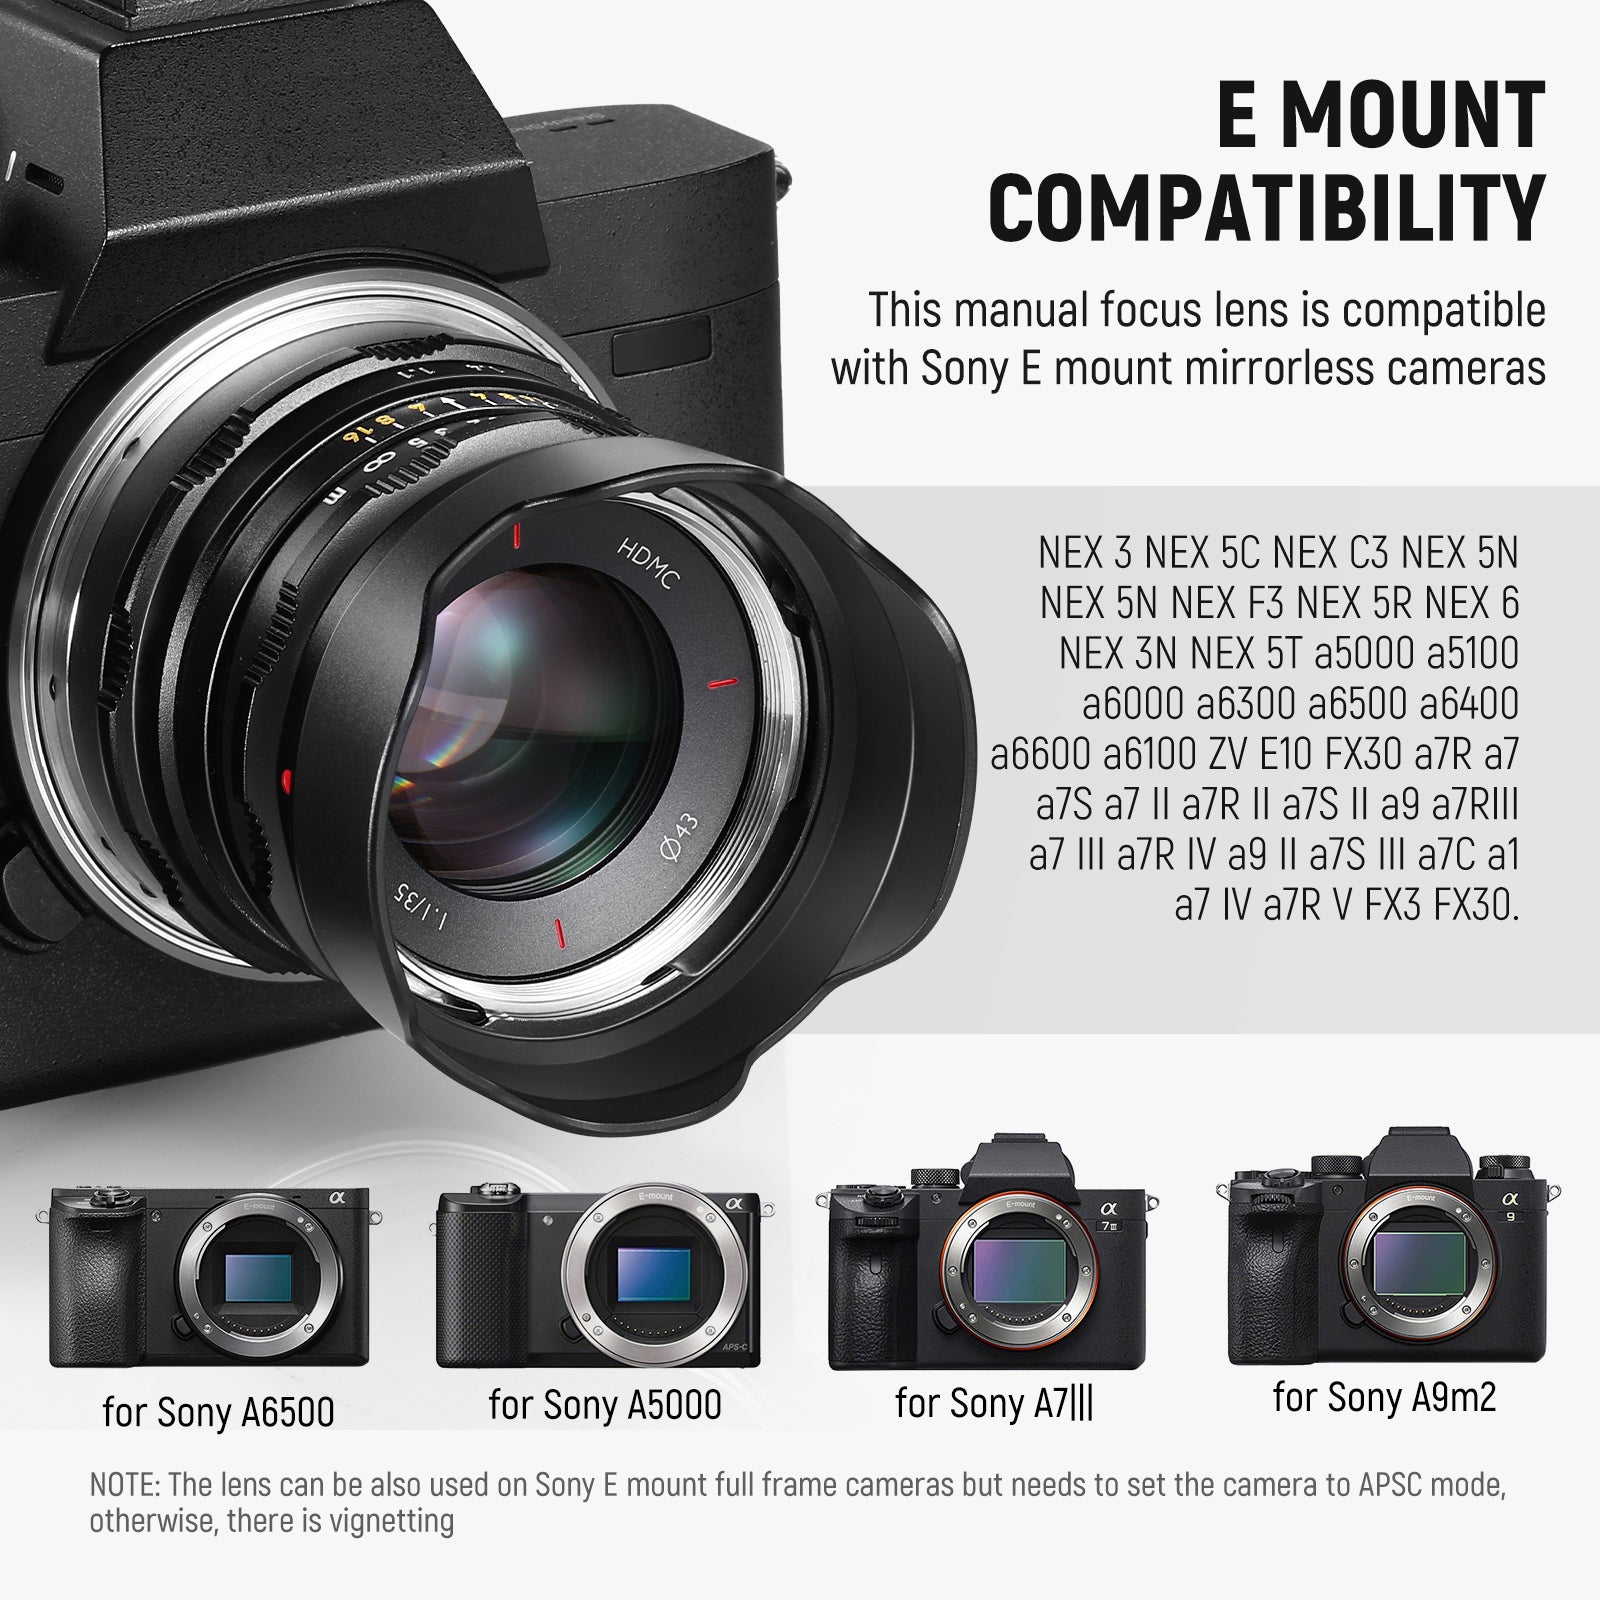 NEEWER 35mm f1.1 APS-C Large Aperture Manual Focus Prime Lens - NEEWER